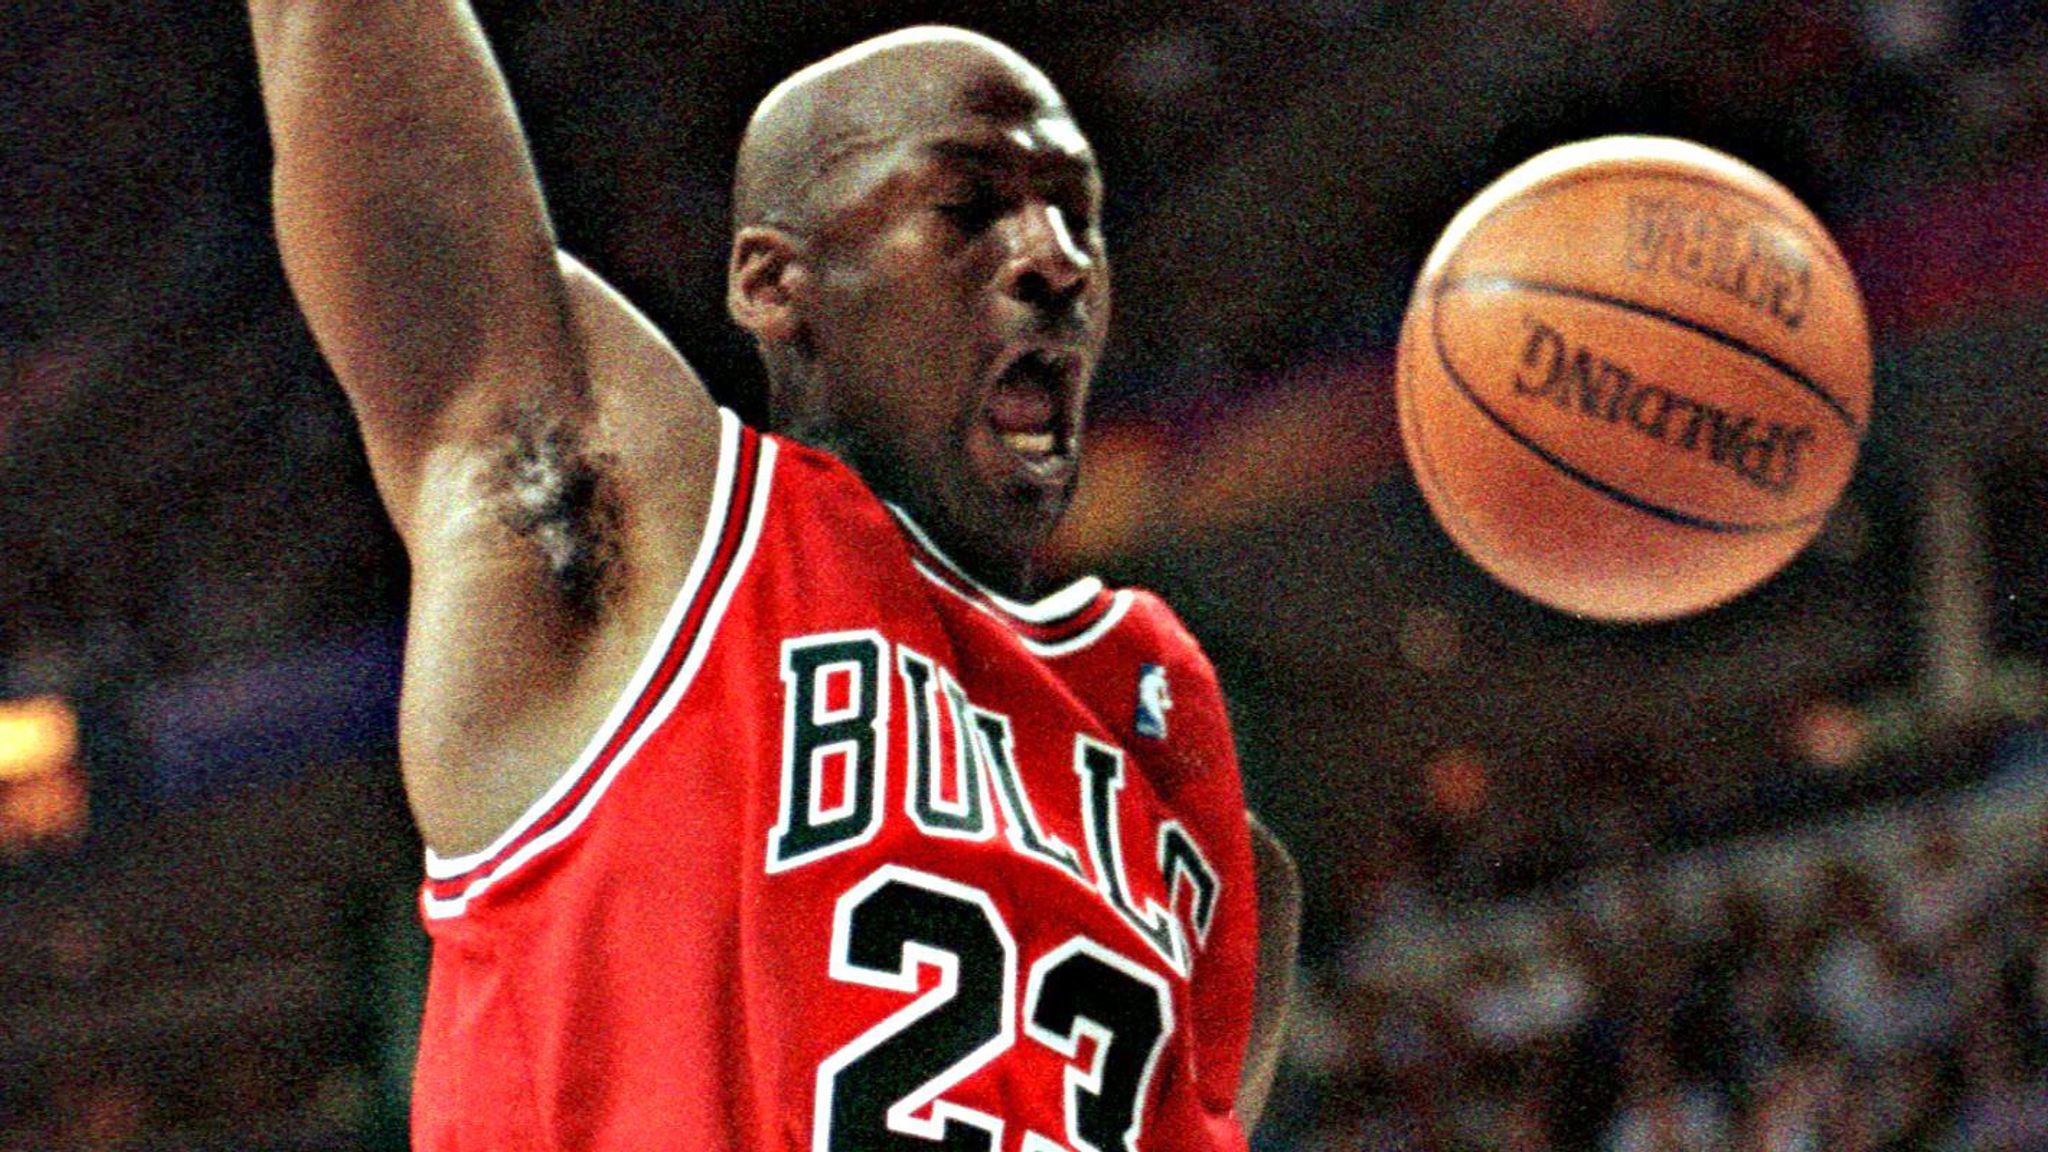 hardware middag På hovedet af Michael Jordan: Relive his greatest Chicago Bulls games | NBA News | Sky  Sports